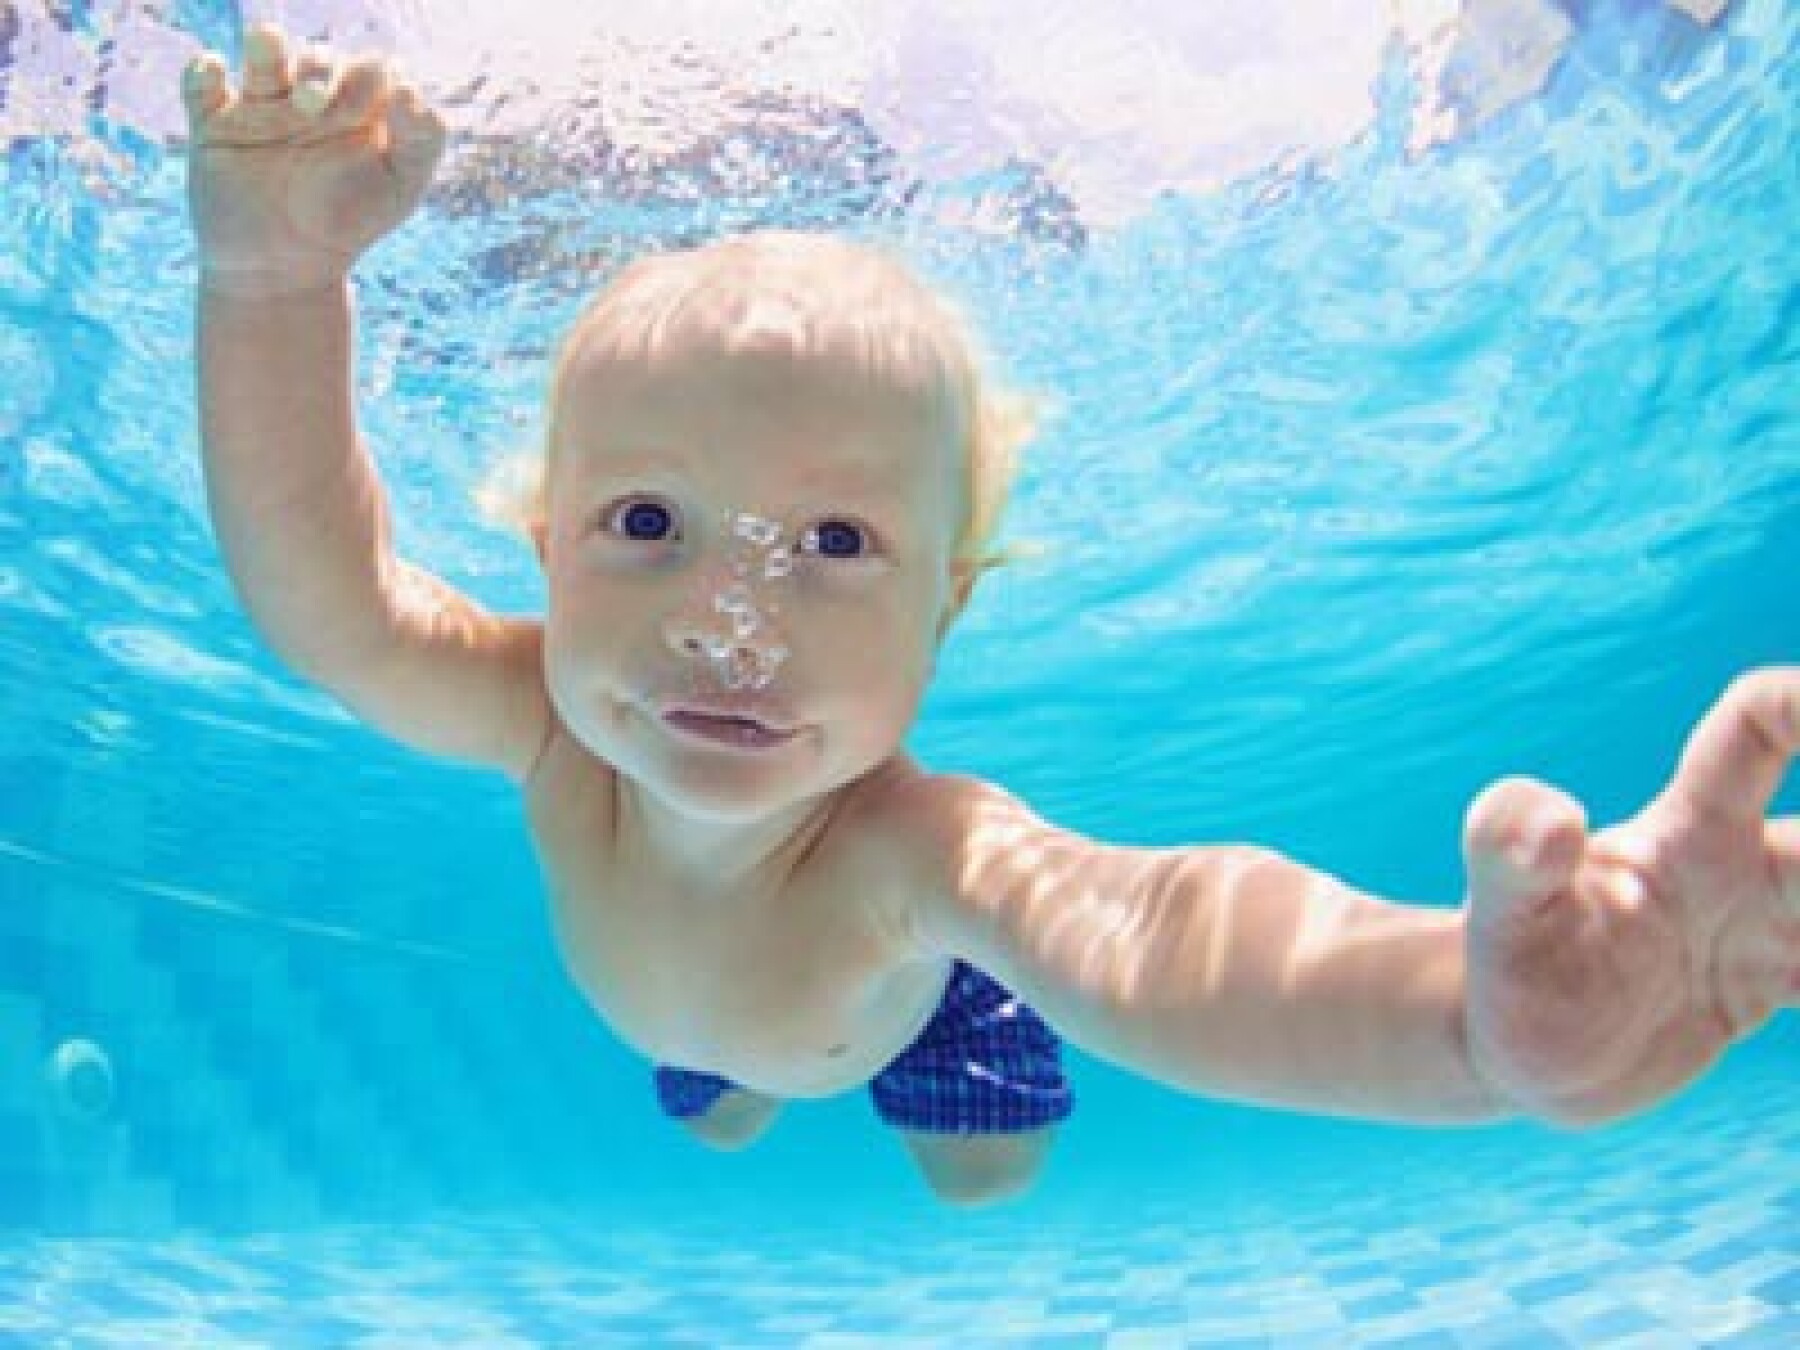 Bébés nageurs : les enfants sont-ils sollicités trop tôt ?